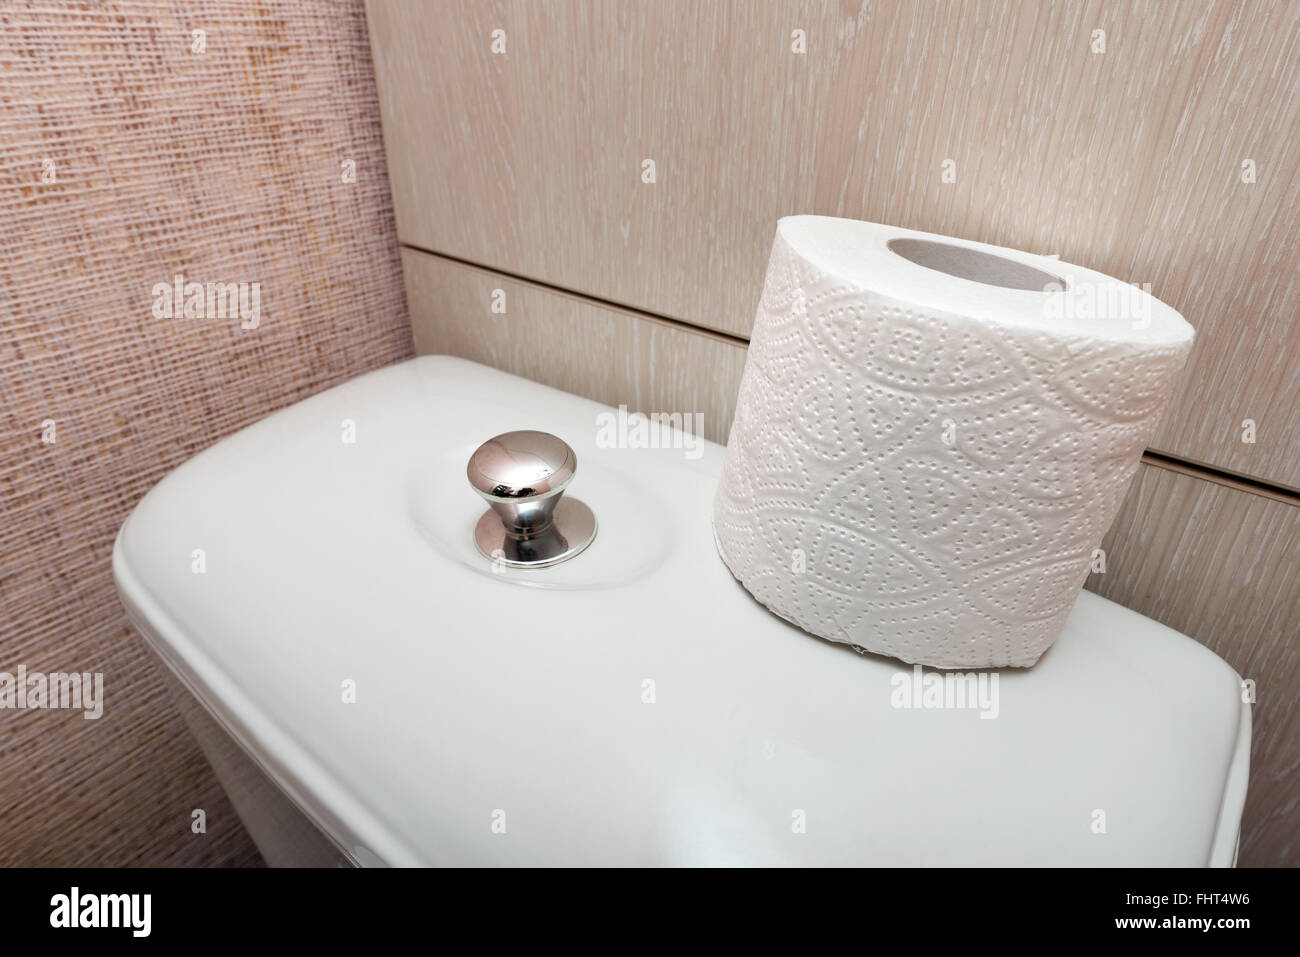 Un soft bianca IGIENICA Carta igienica rotolo viene messo sul filo, nel restroom Foto Stock